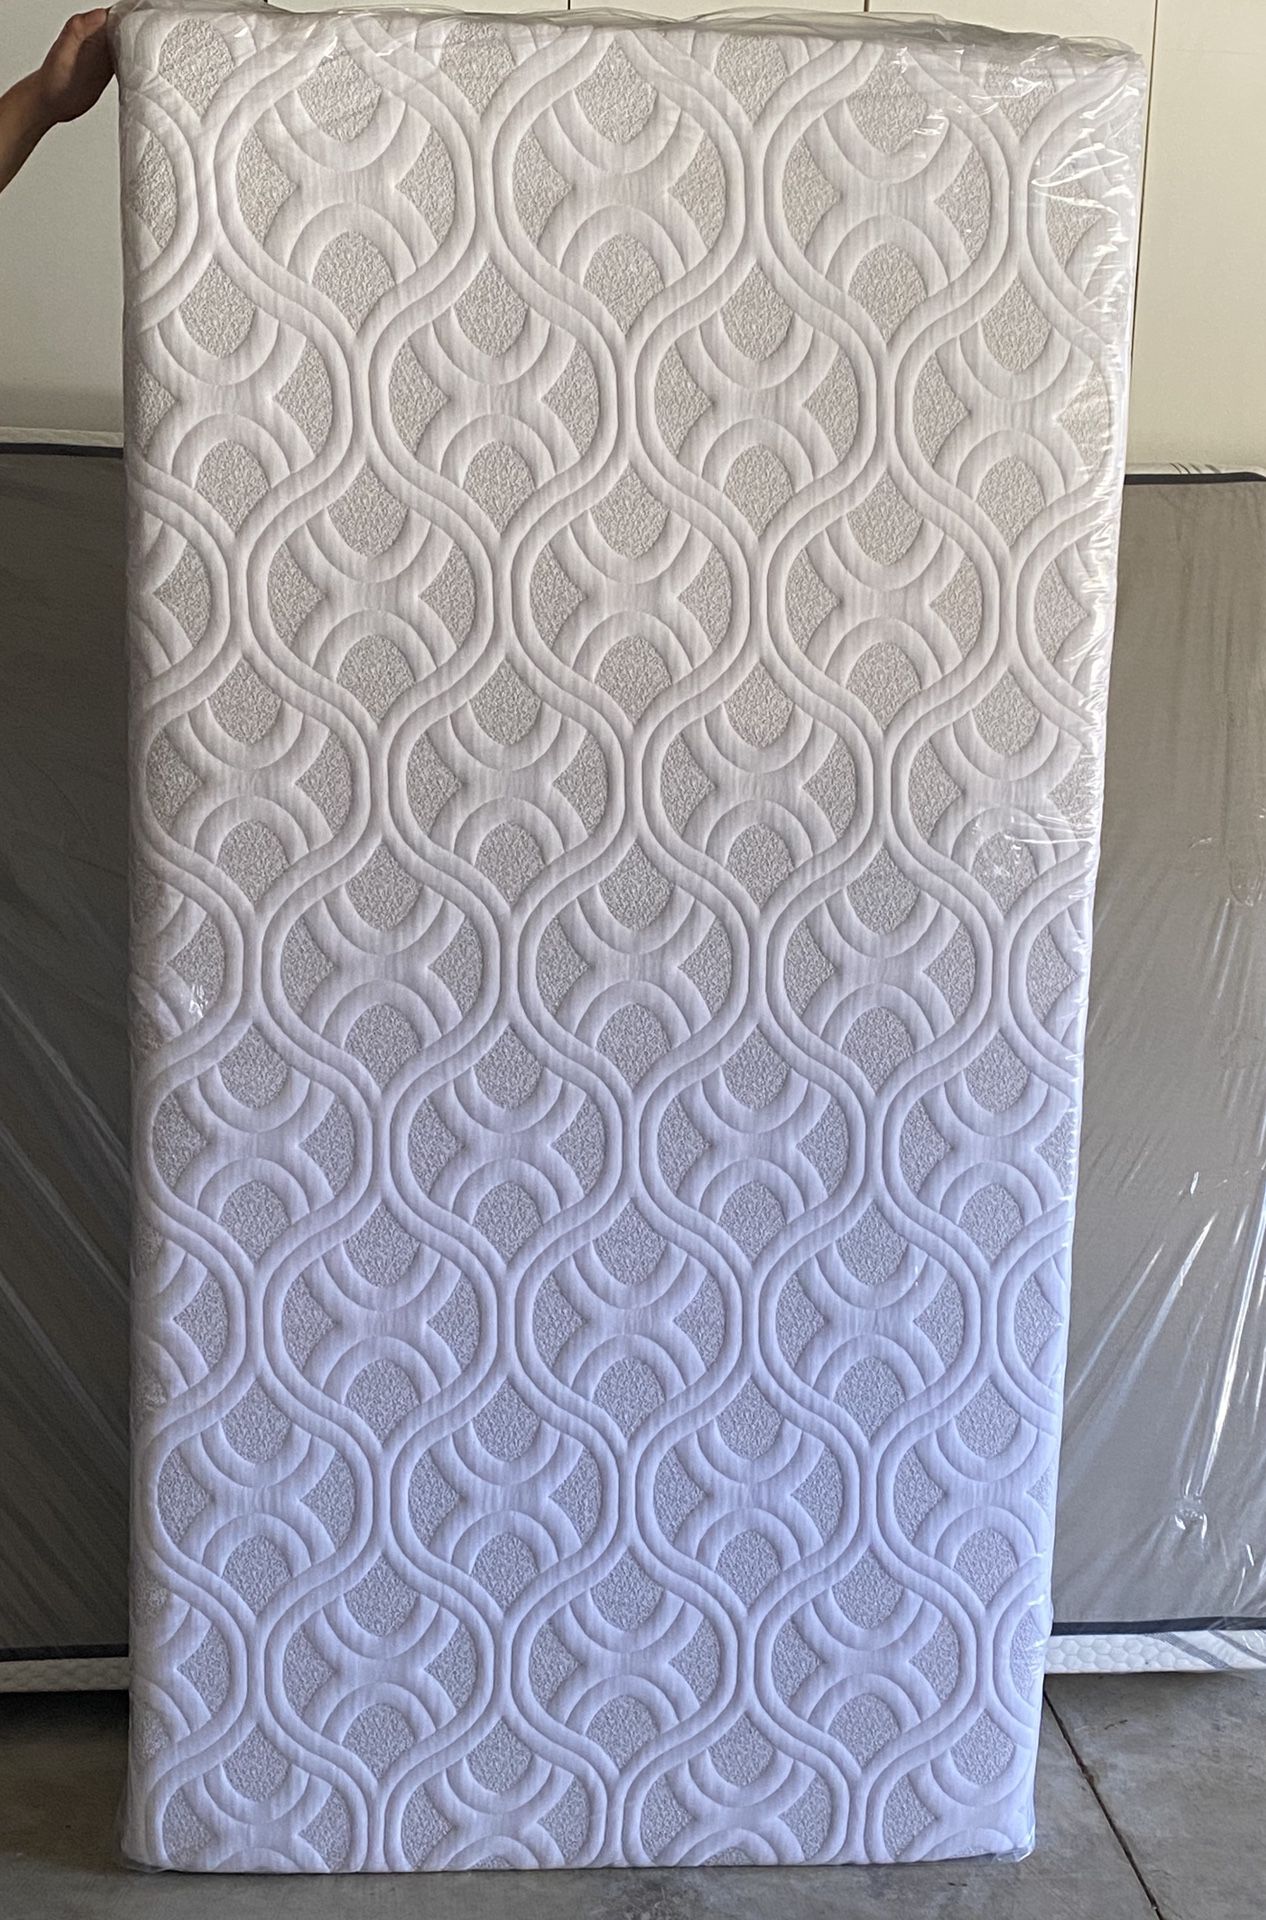 Twin mattress, New in bag, gel memory foam, 10 inch